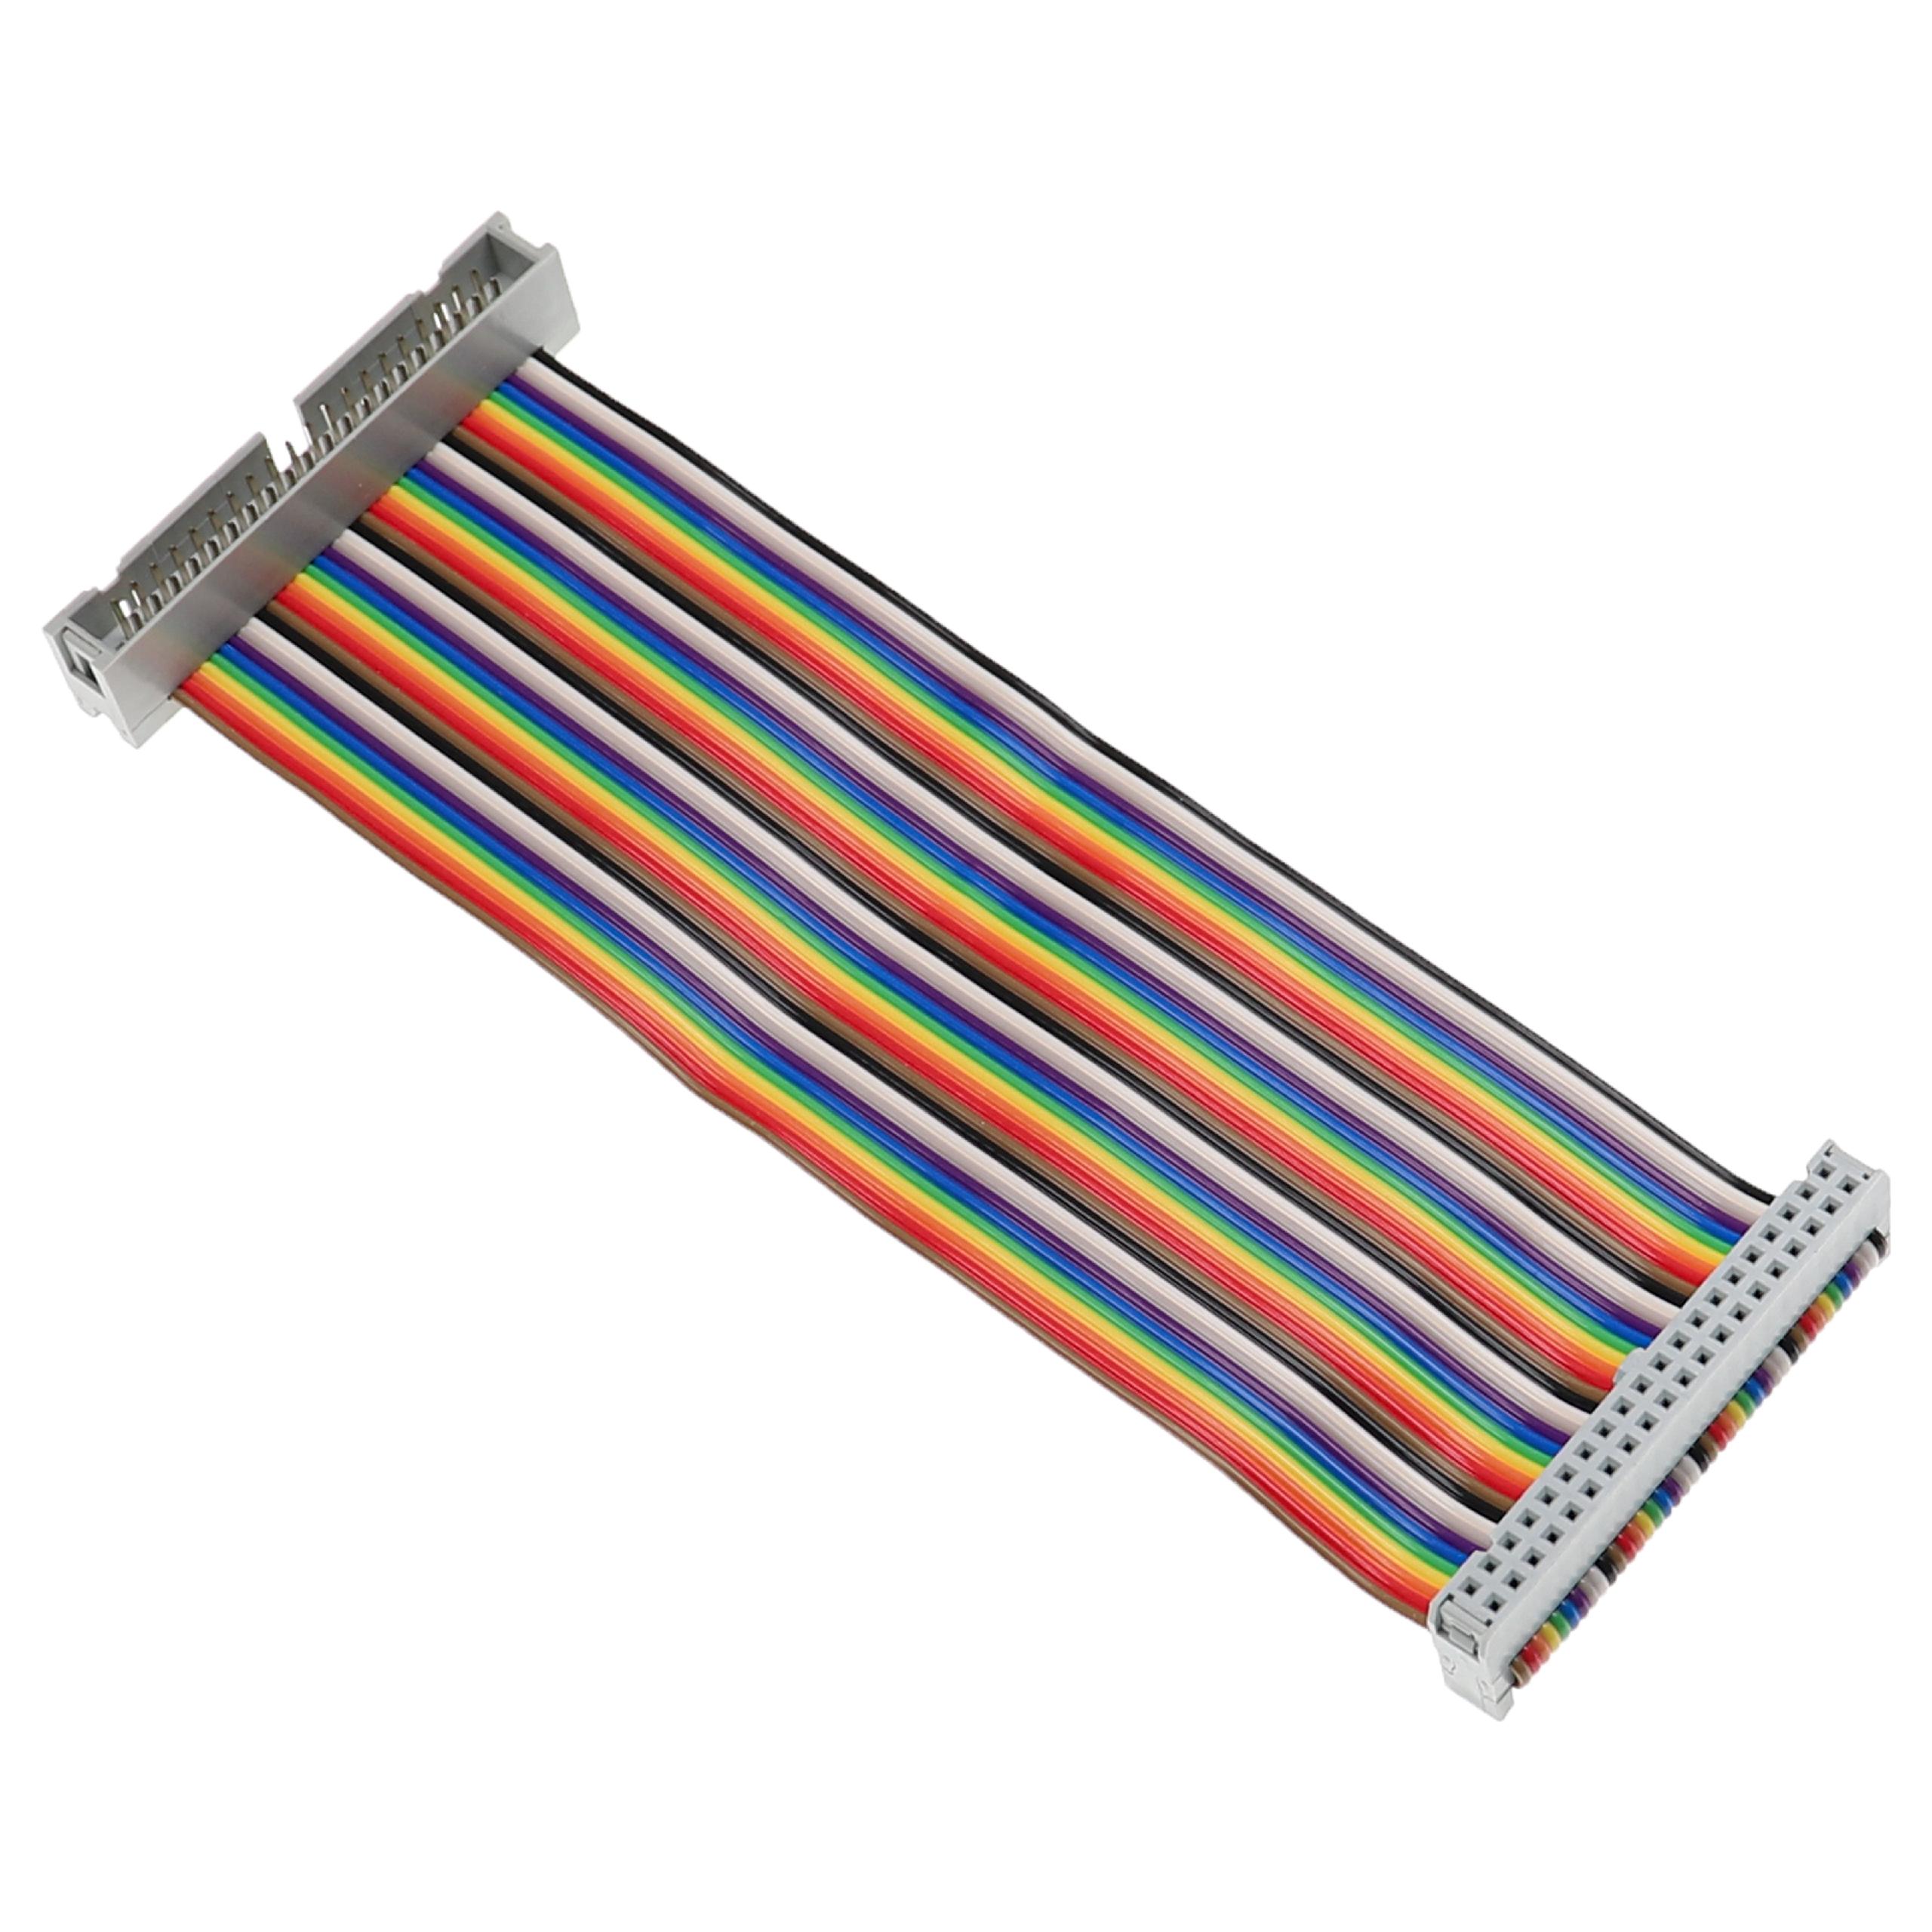 Cavo GPIO da 40 pin adatto a Raspberry Pi minicomputer - Cavo di prolunga GPIO multicolore, 15 cm